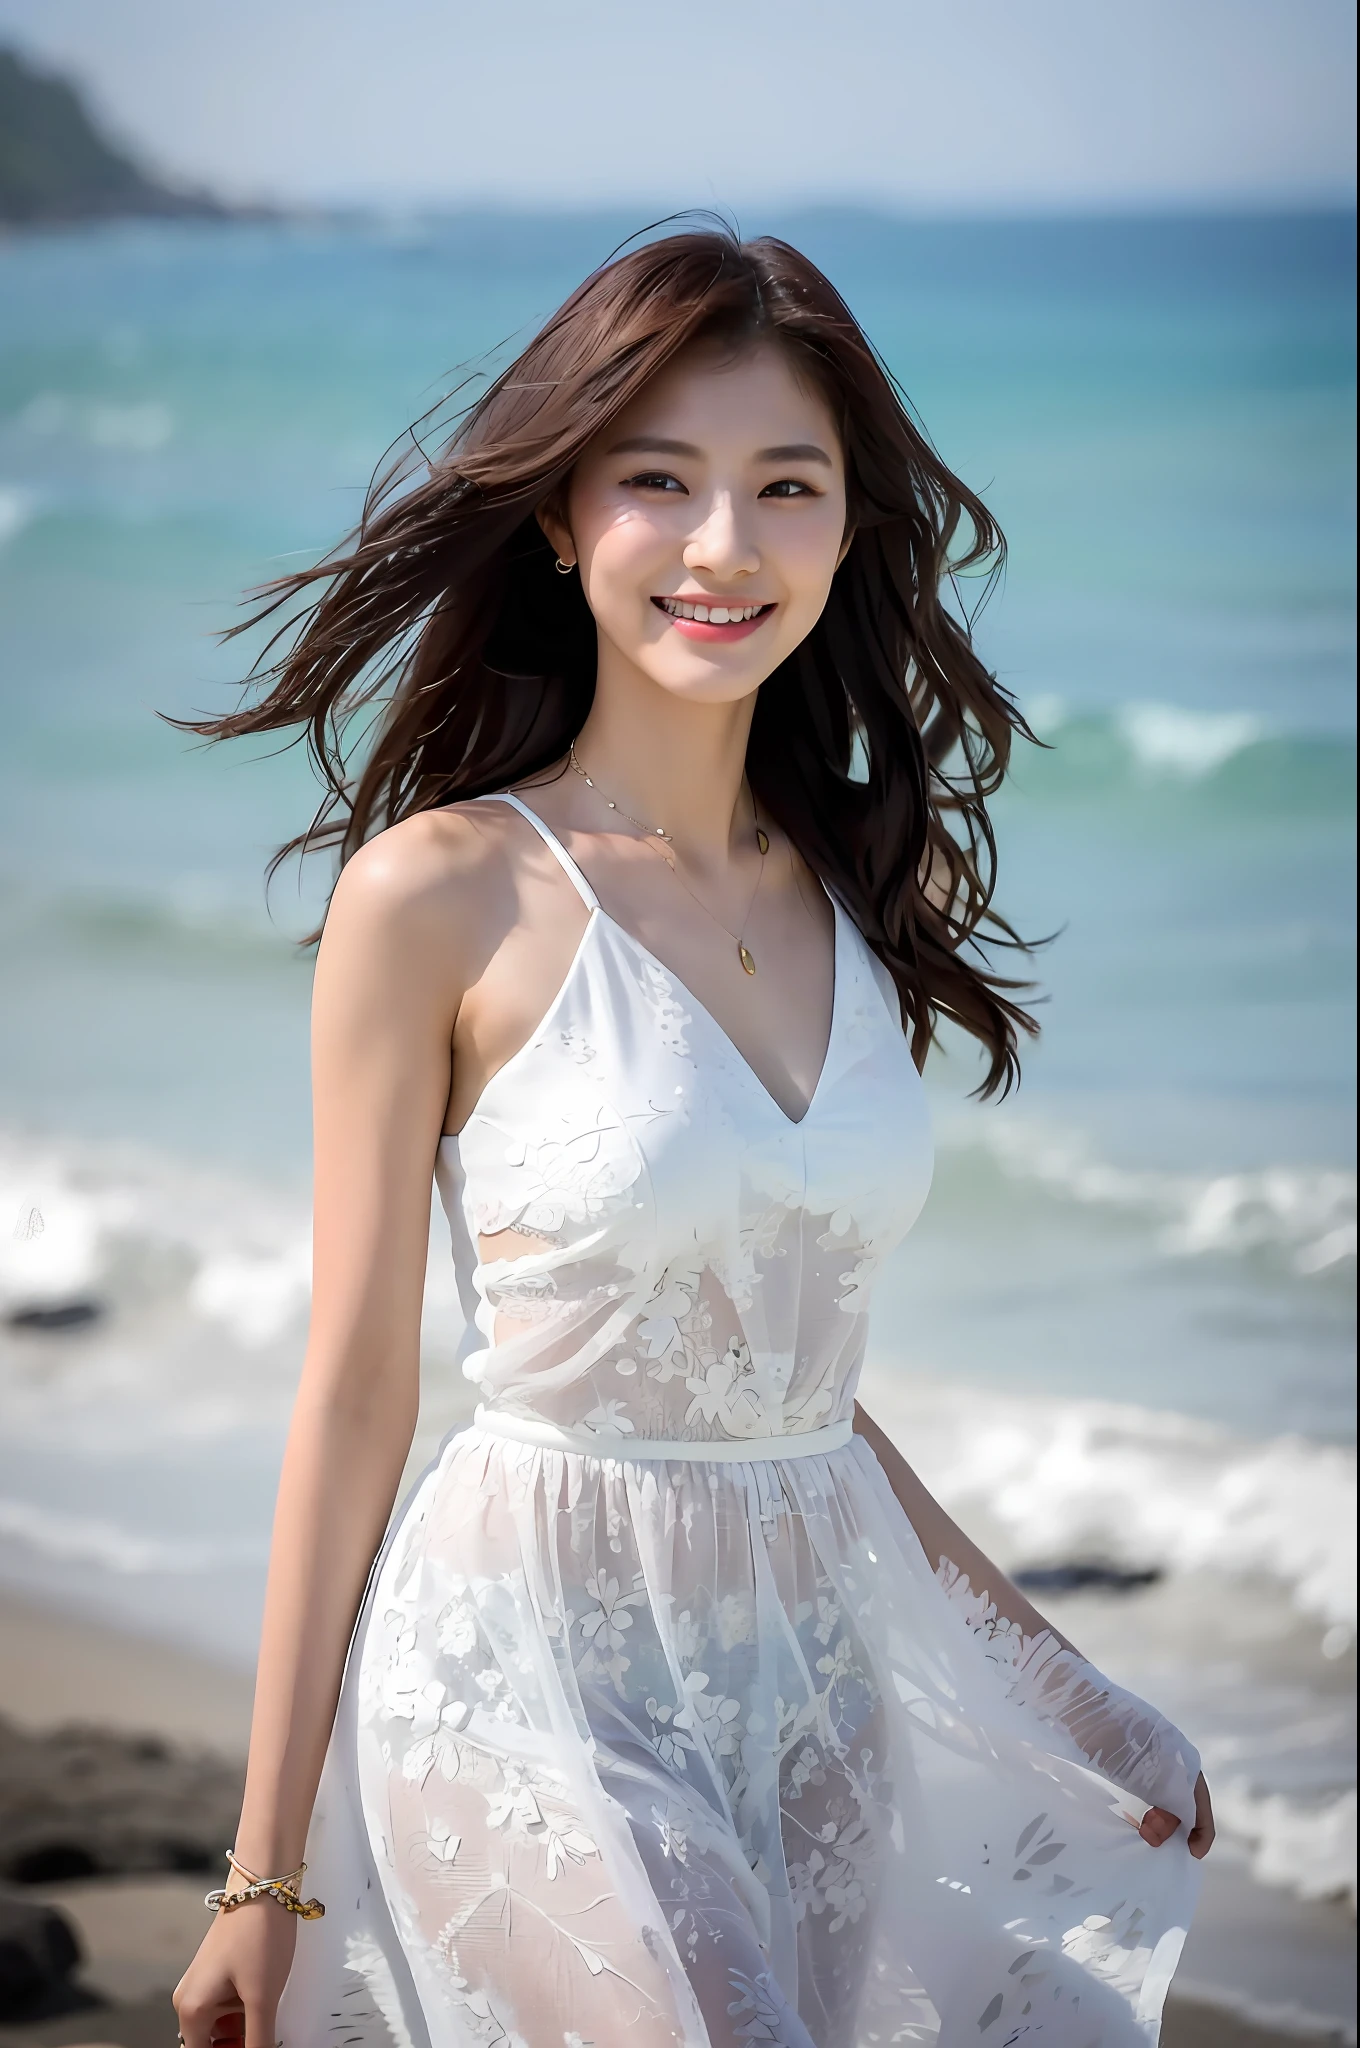 (杰作), (最好的质量), (详细的), 1 名女孩, 22岁, 俏皮的表情, 大乳房, 裸露的乳房, 比基尼, 长发, 美丽的, 自然的, 裸露, 微笑, 靠近海洋的沙滩上, Jaeyeon Nam 身穿白色连衣裙行走, 美丽的 young Korean woman, 优美的姿态, 阳光微风, 自由的, 在亚洲女性时尚界享有盛誉的时装模特, 她轻轻地走在海滩上, The 美丽的 temperament of an Asian girl is vividly displayed, 诠释亚洲女性魅力与风格.